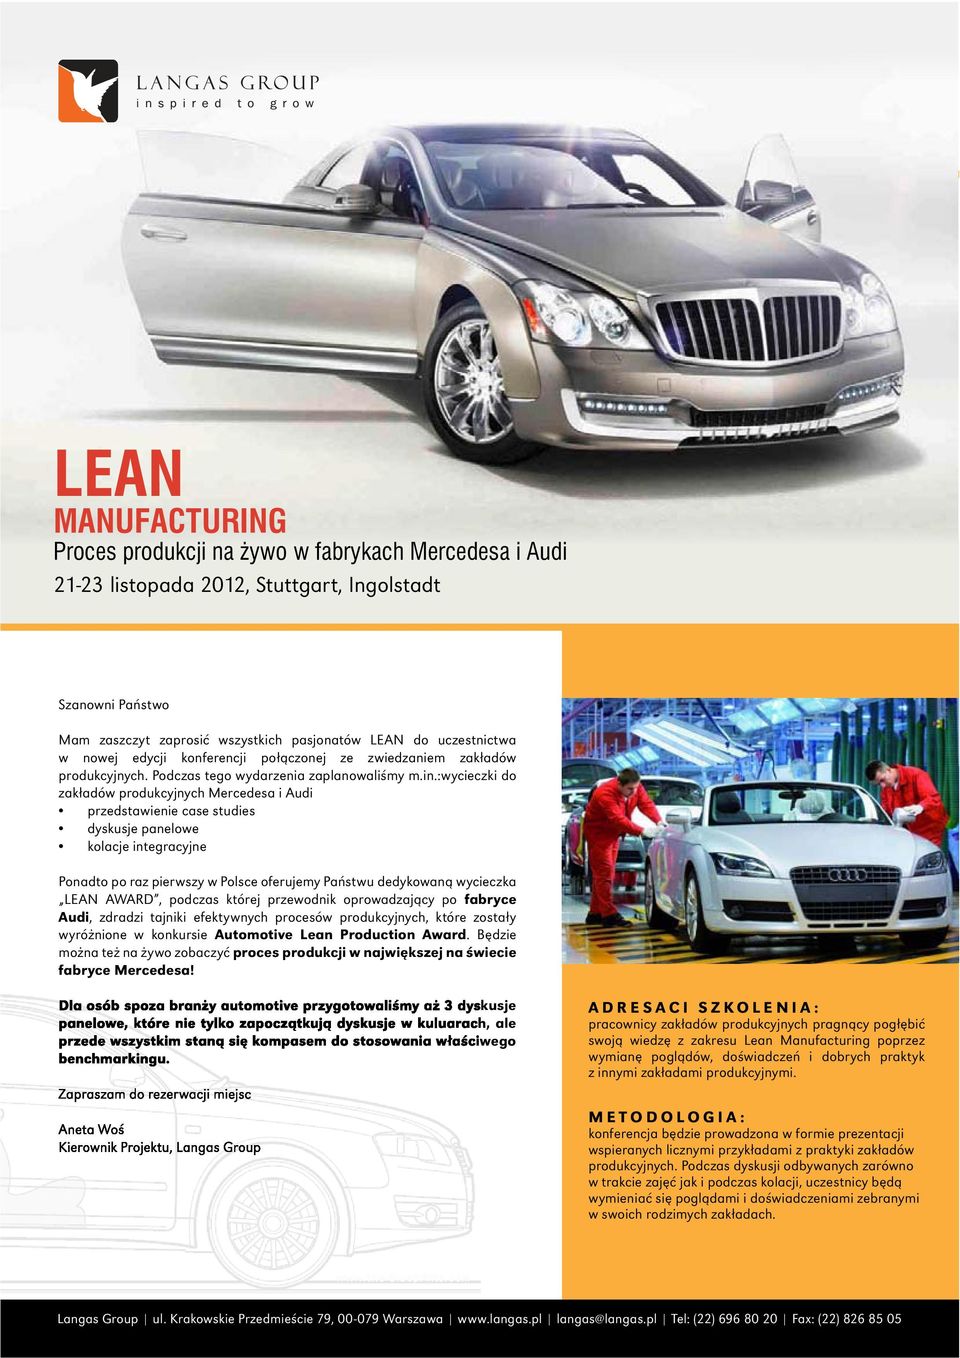 LEAN AWARD, podczas której przewodnik oprowadzający po fabryce Audi, zdradzi tajniki efektywnych procesów produkcyjnych, które zostały wyróżnione w konkursie Automotive Lean Production Award.